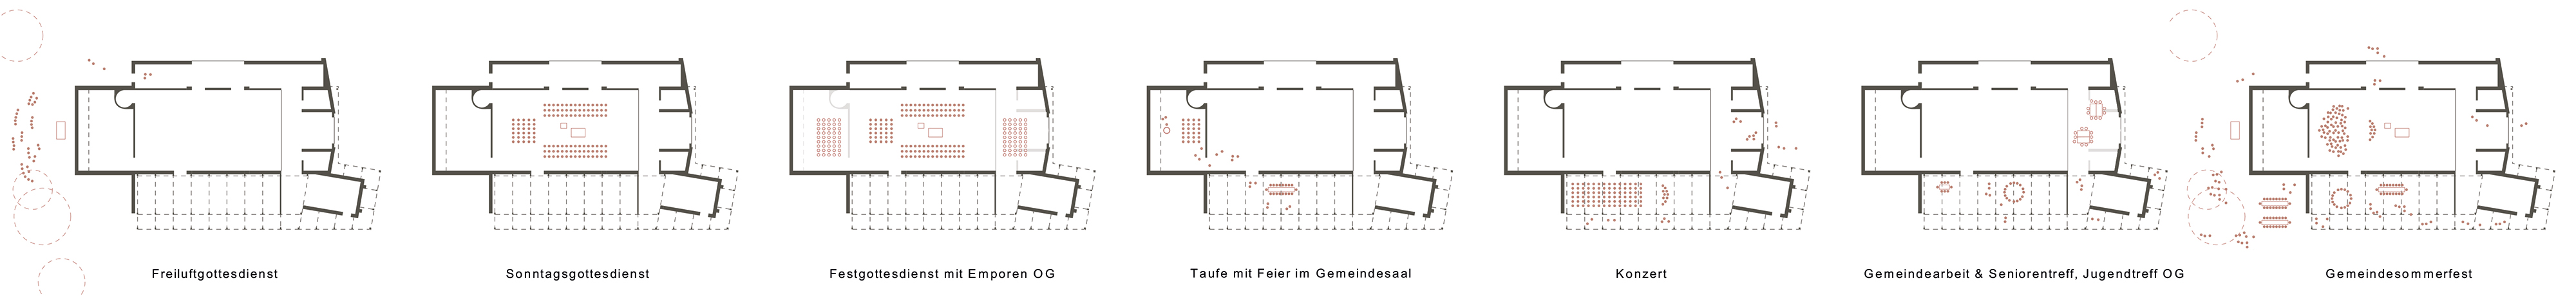 Wettbewerb | Umbau der Kirche zum Gemeindezentrum | Durchhausen